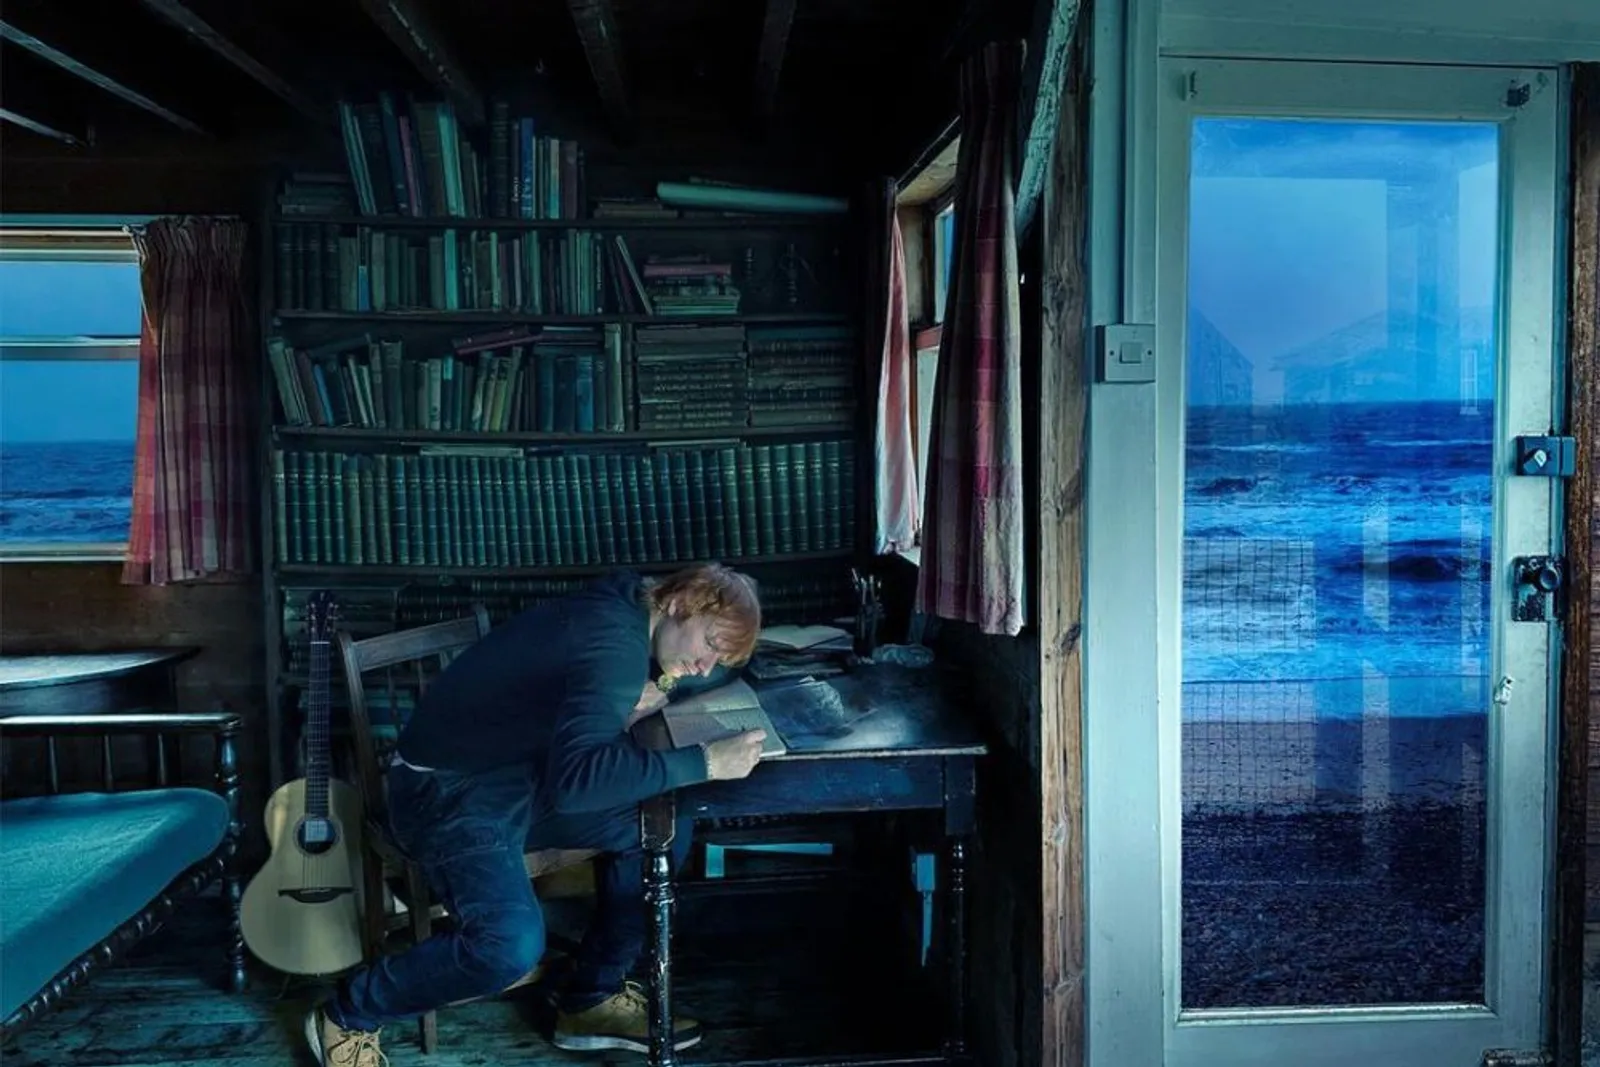 Metafora Perasaan Depresi, Ini Lirik Lagu "Boat" Milik Ed Sheeran